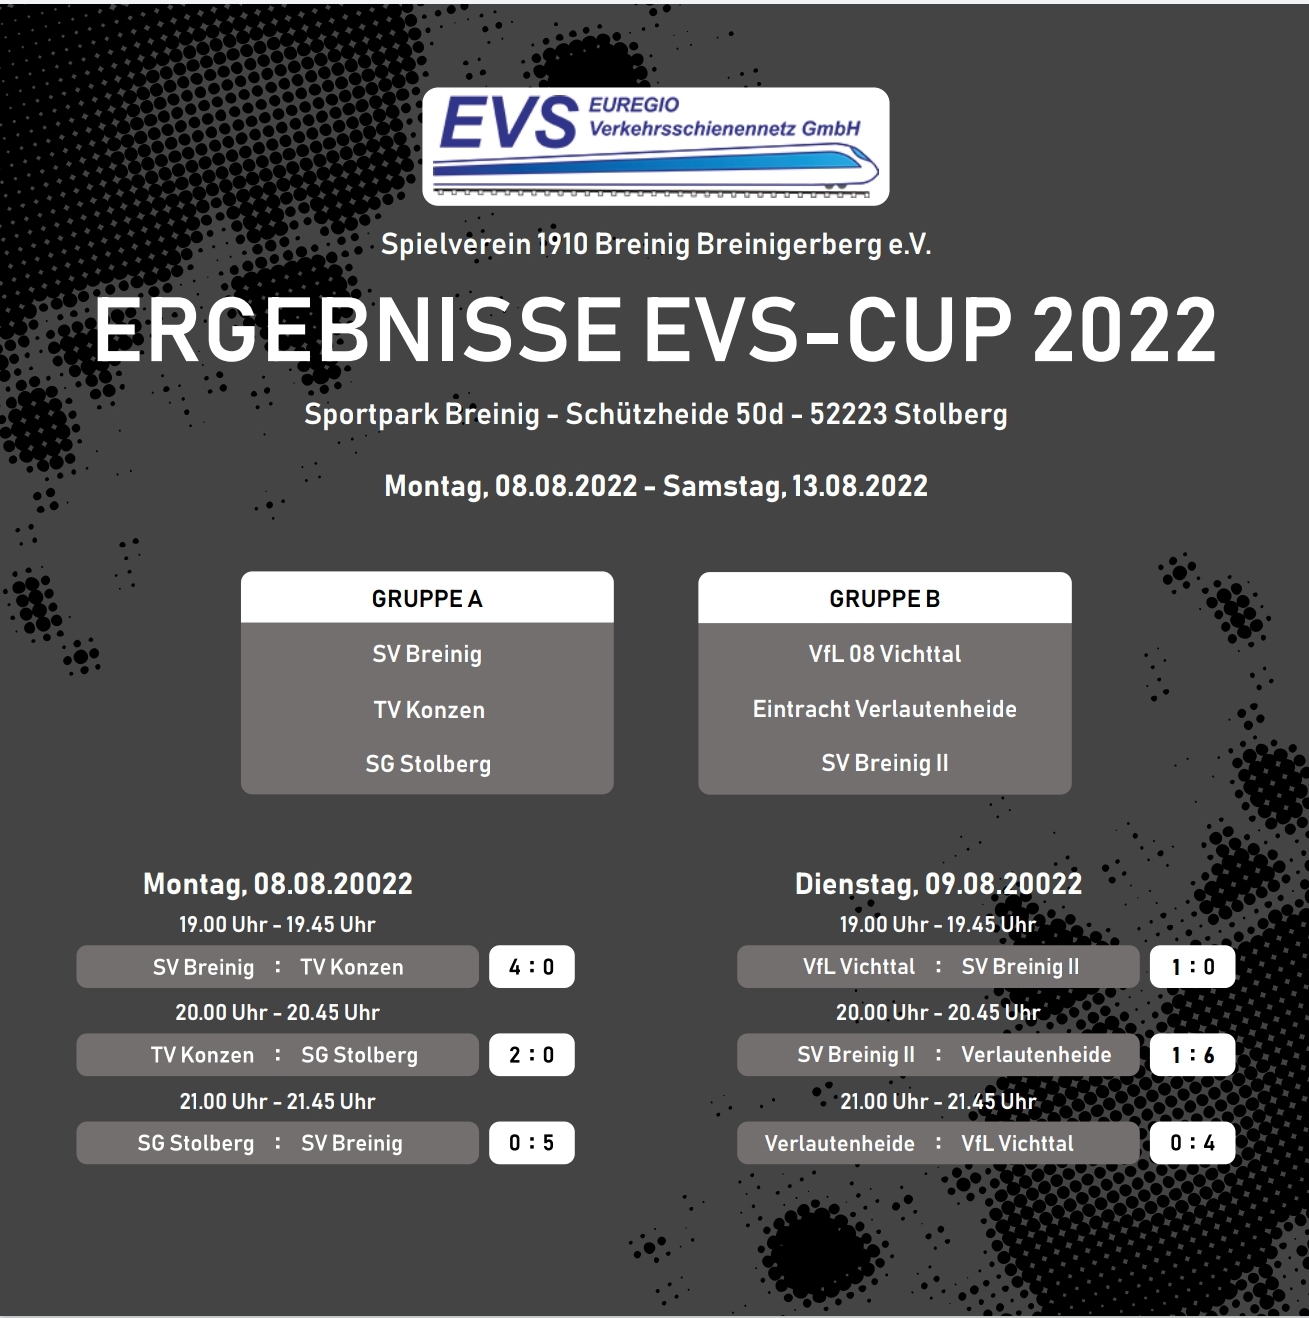 Ergebnisse EVS Cup 2022 Gruppenphase